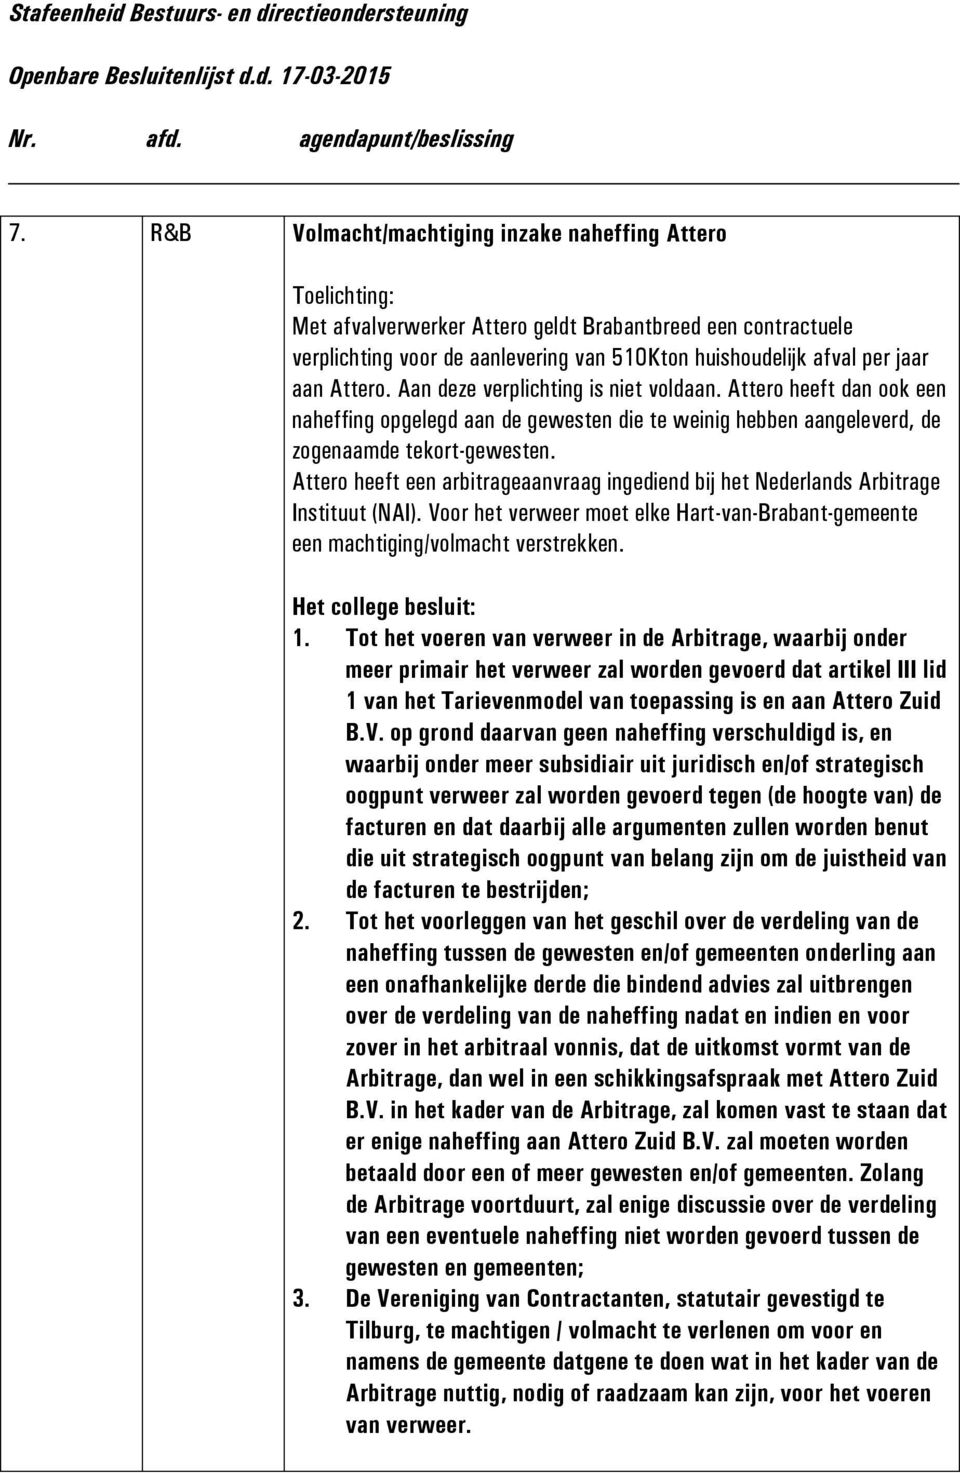 Attero heeft een arbitrageaanvraag ingediend bij het Nederlands Arbitrage Instituut (NAI). Voor het verweer moet elke Hart-van-Brabant-gemeente een machtiging/volmacht verstrekken. 1.